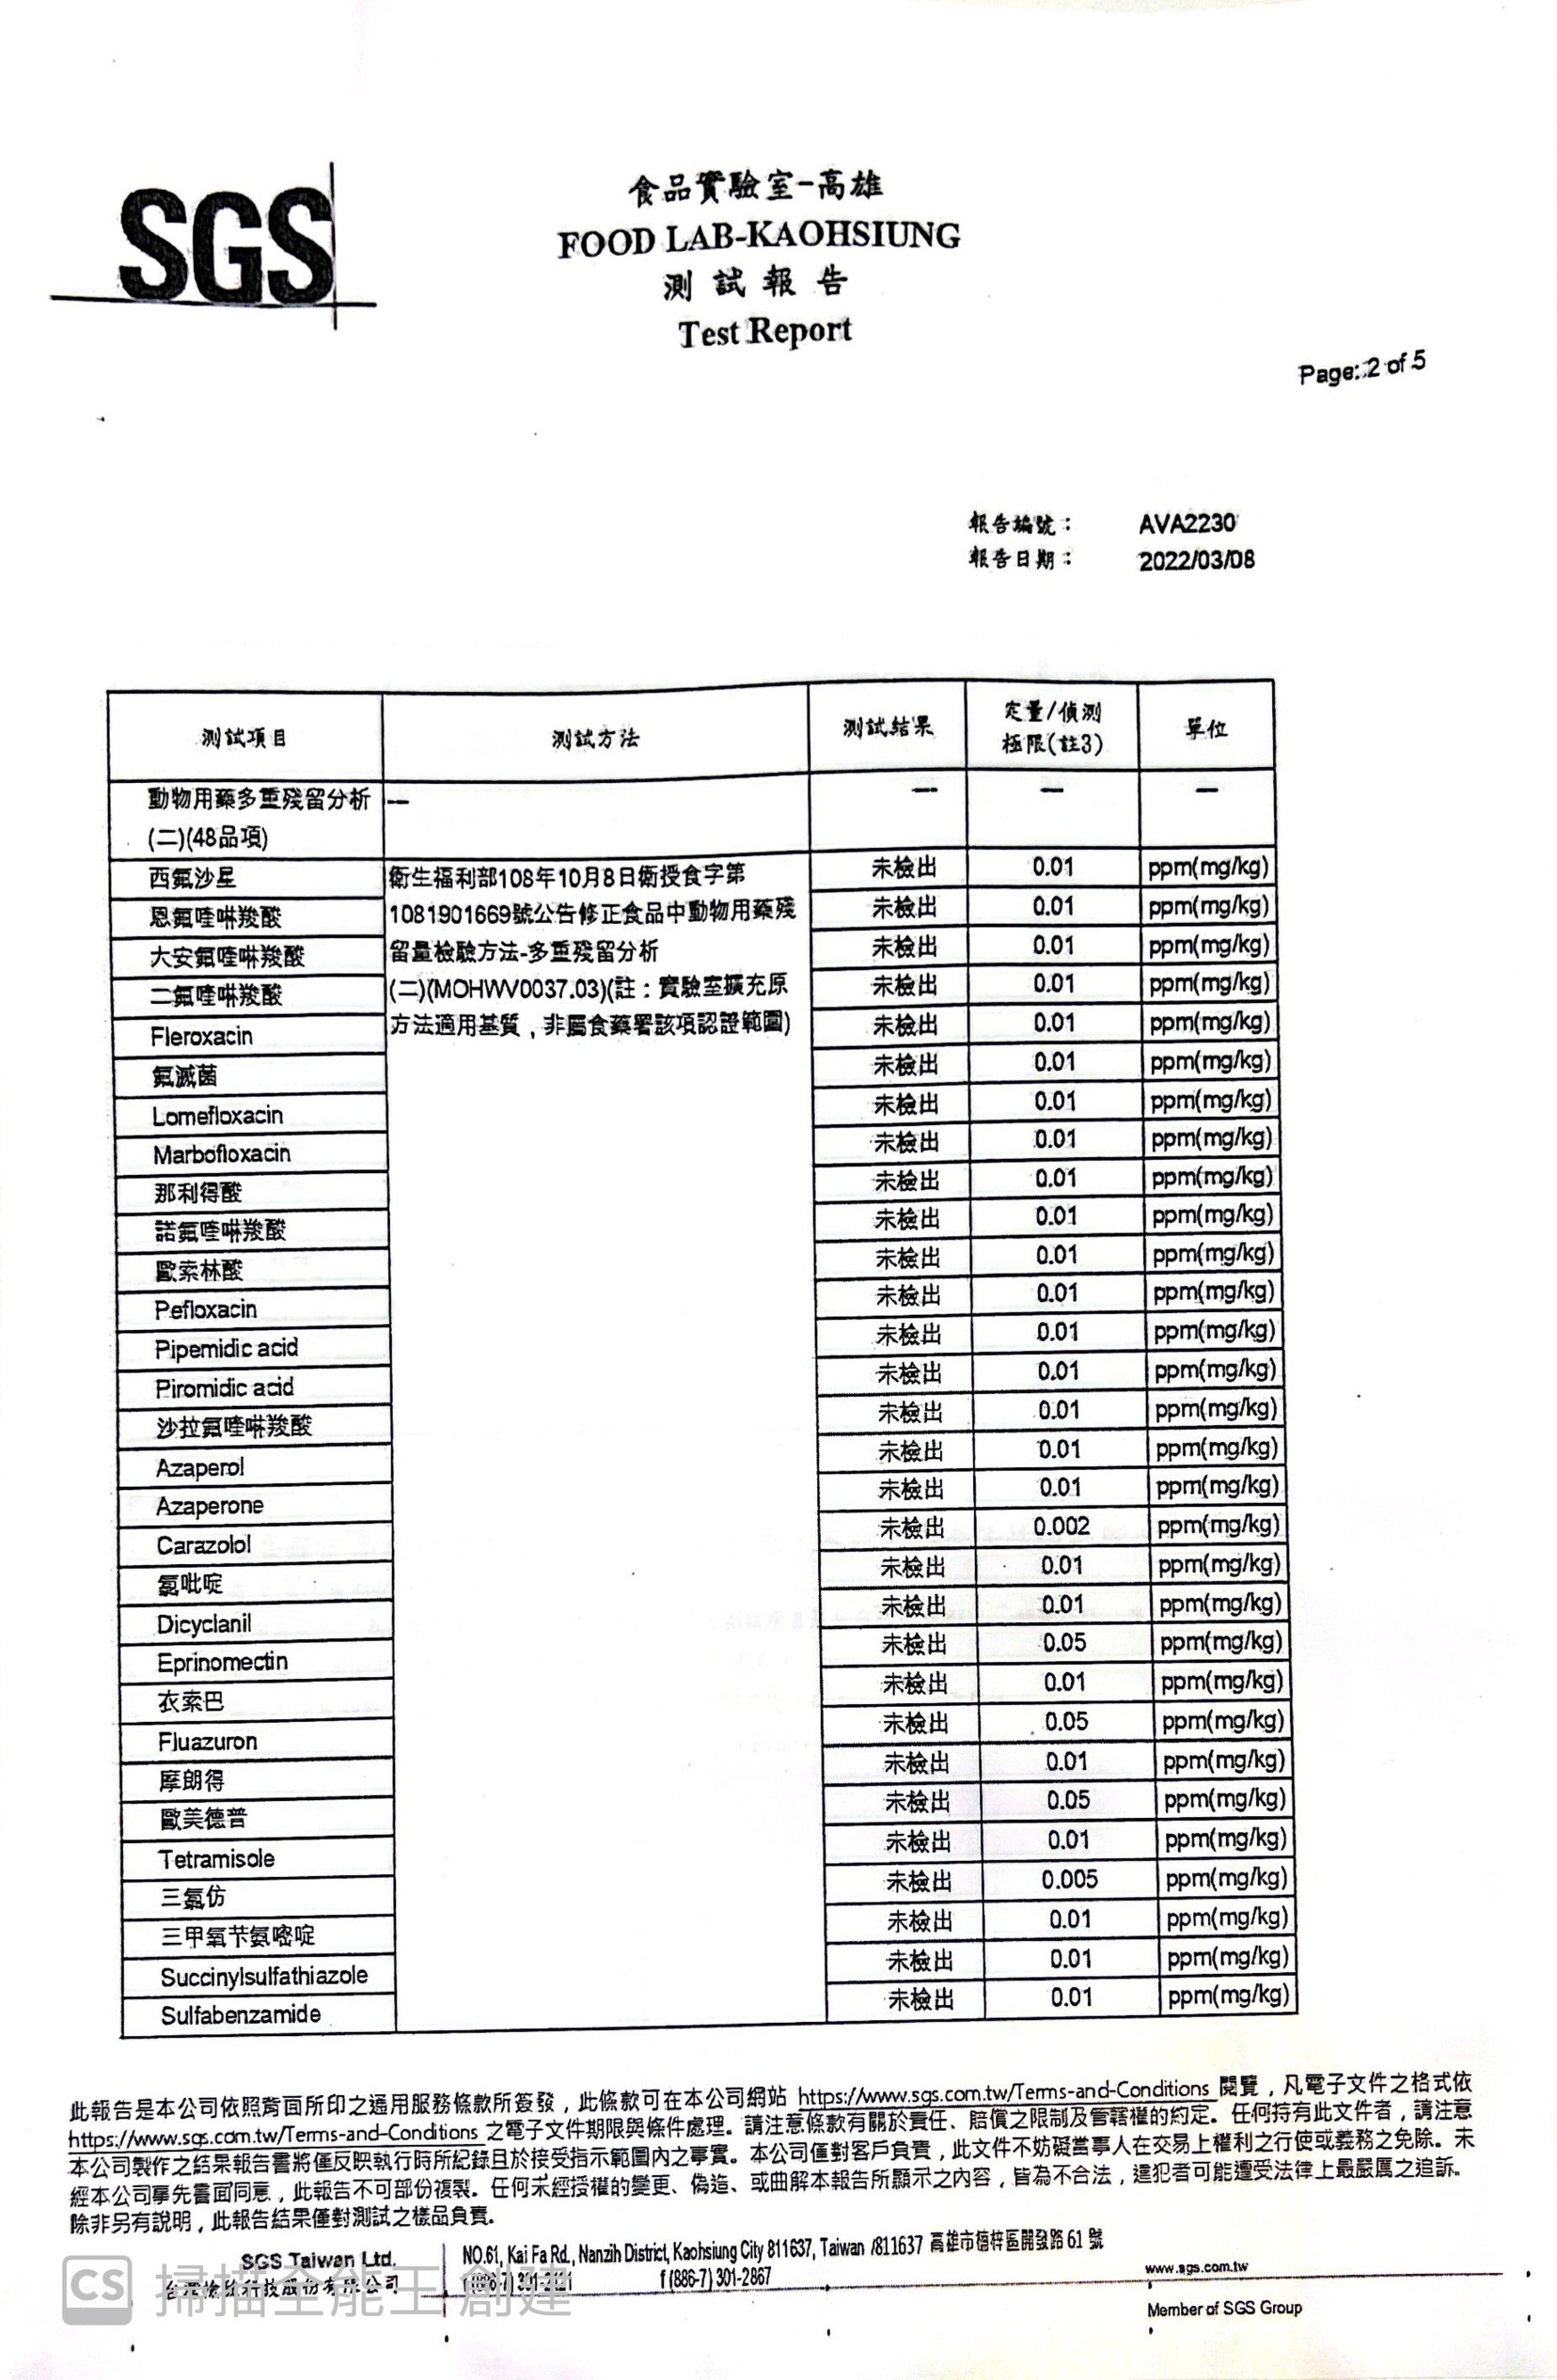 嚴選外銷日本等級鮮嫩蒲燒鰻魚(200g±5%/包)